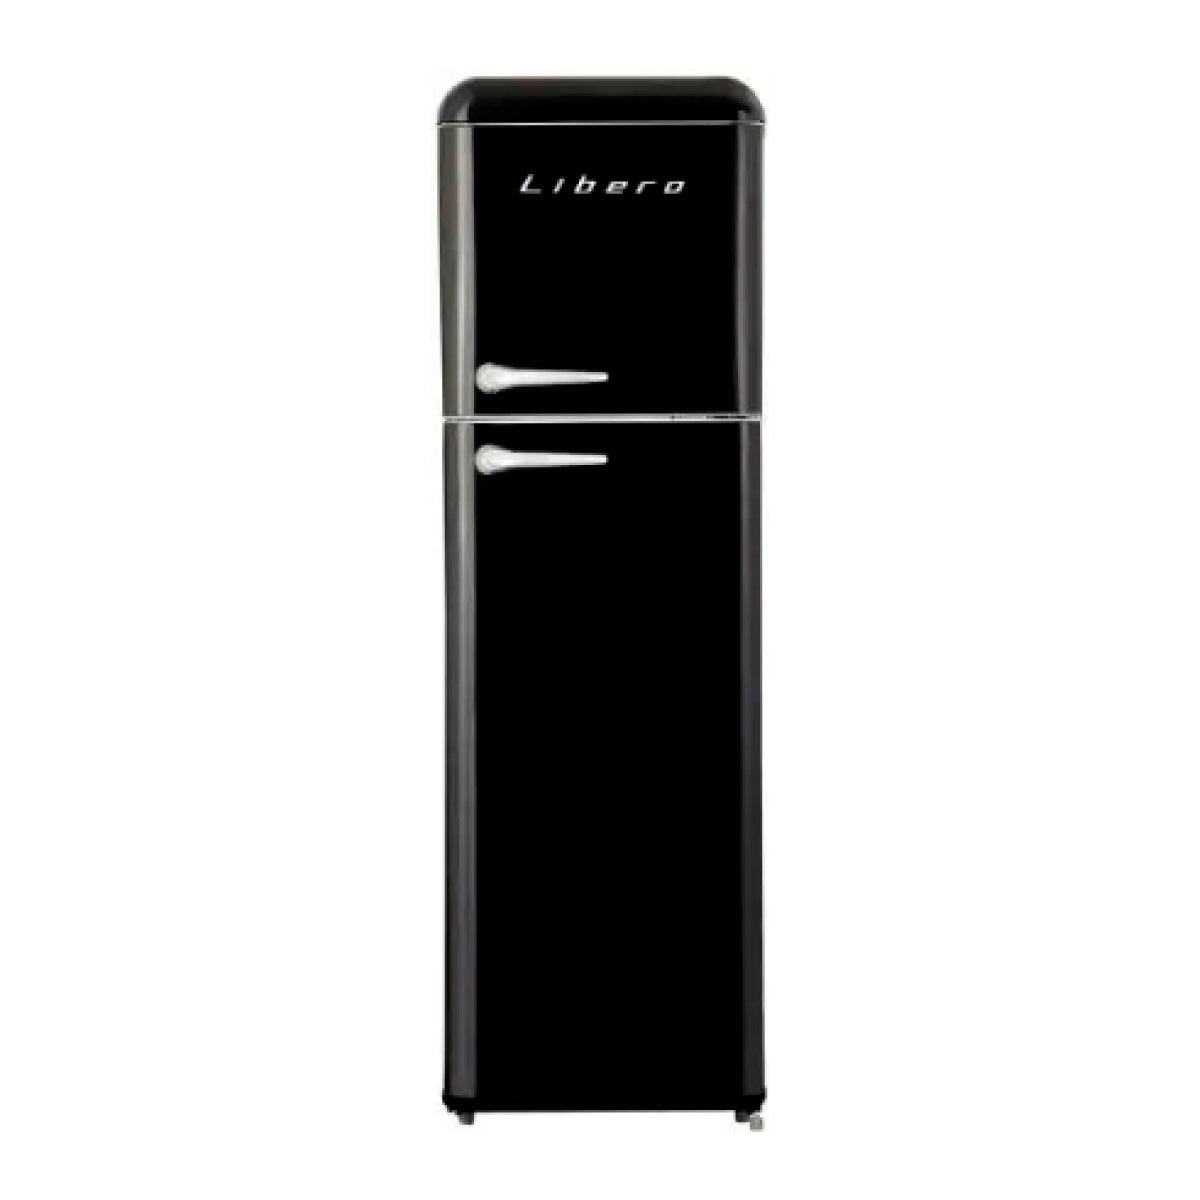 Refrigerador frío directo libero lrt-280dfnr 239 lts color negro [Openbox]